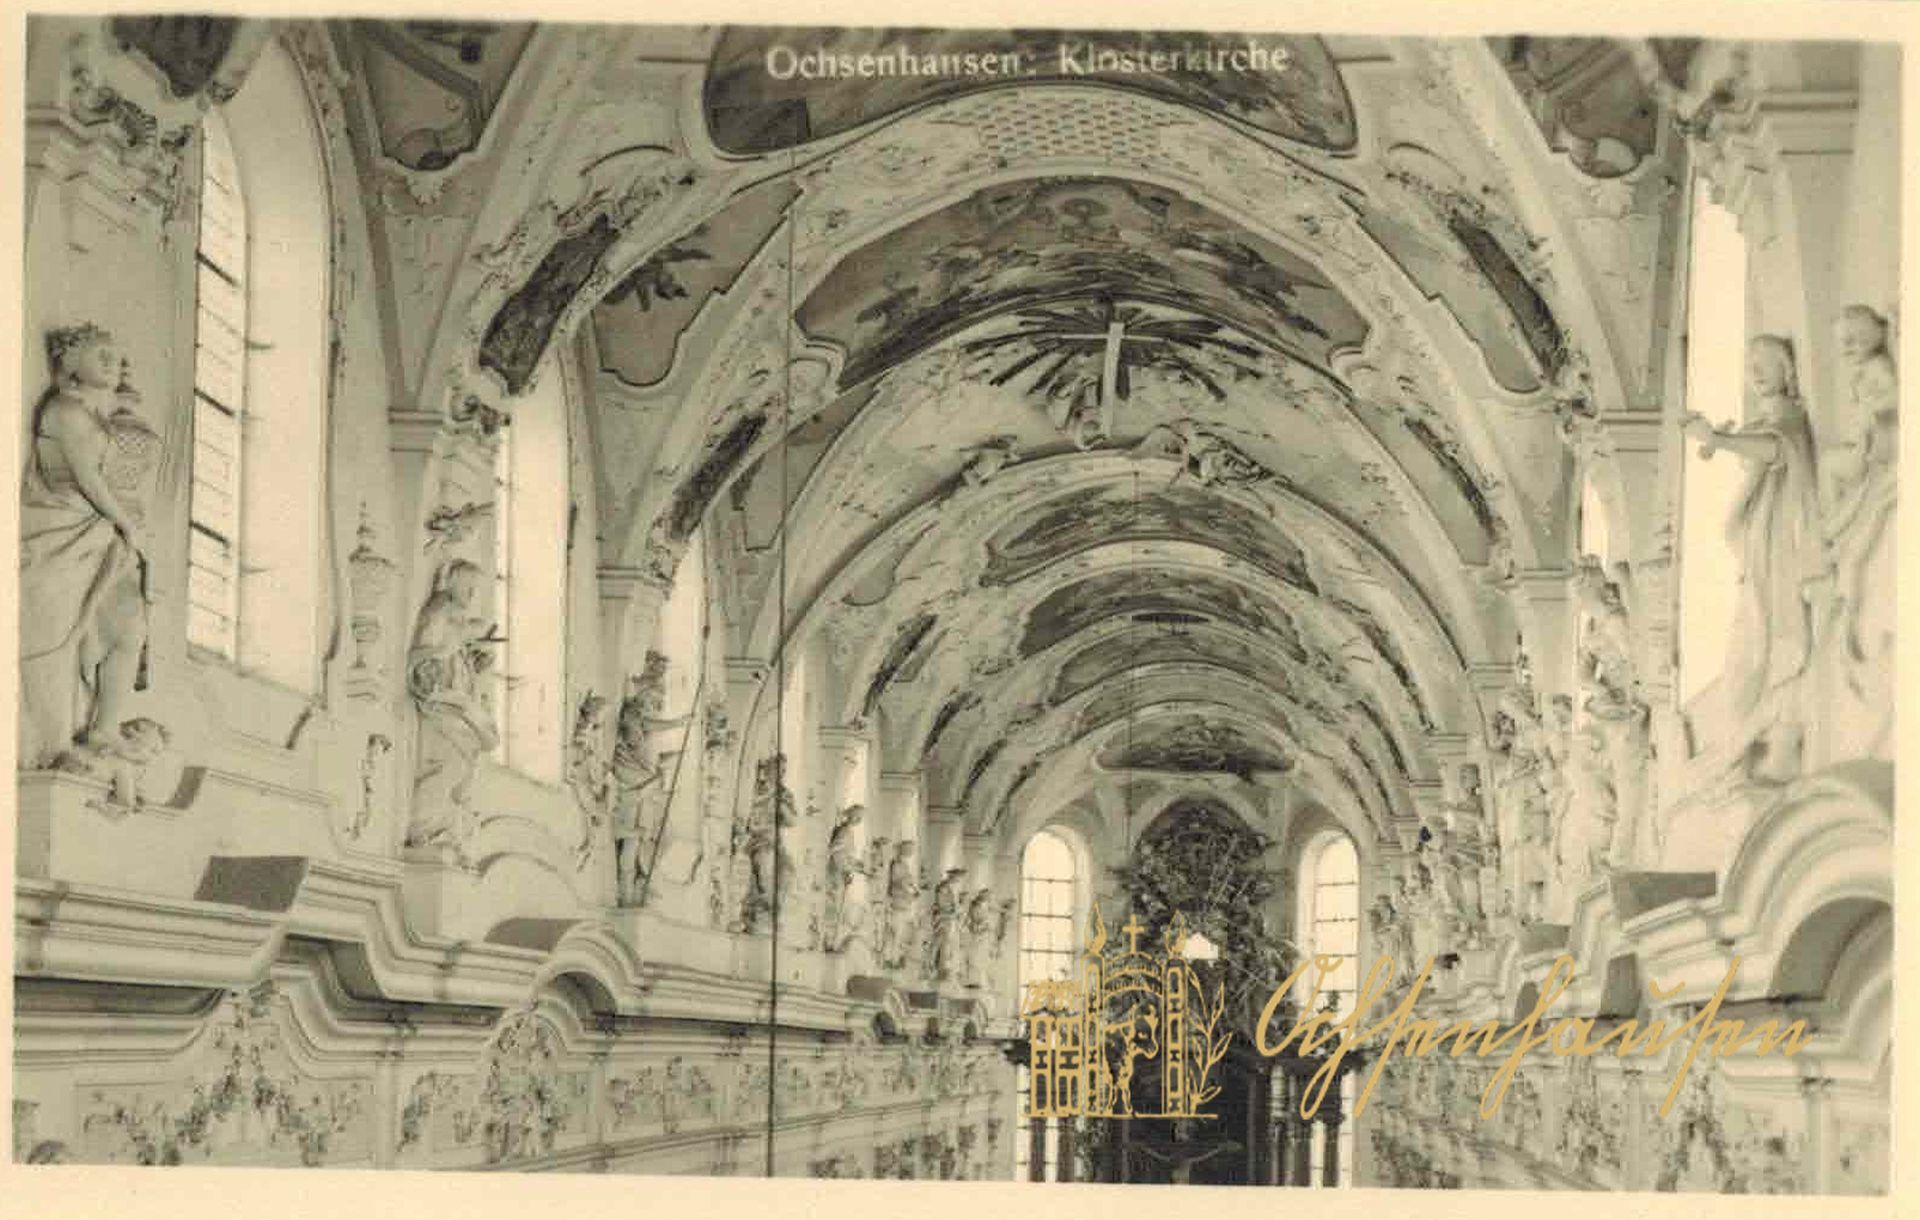 Ochsenhausen: Klosterkirche